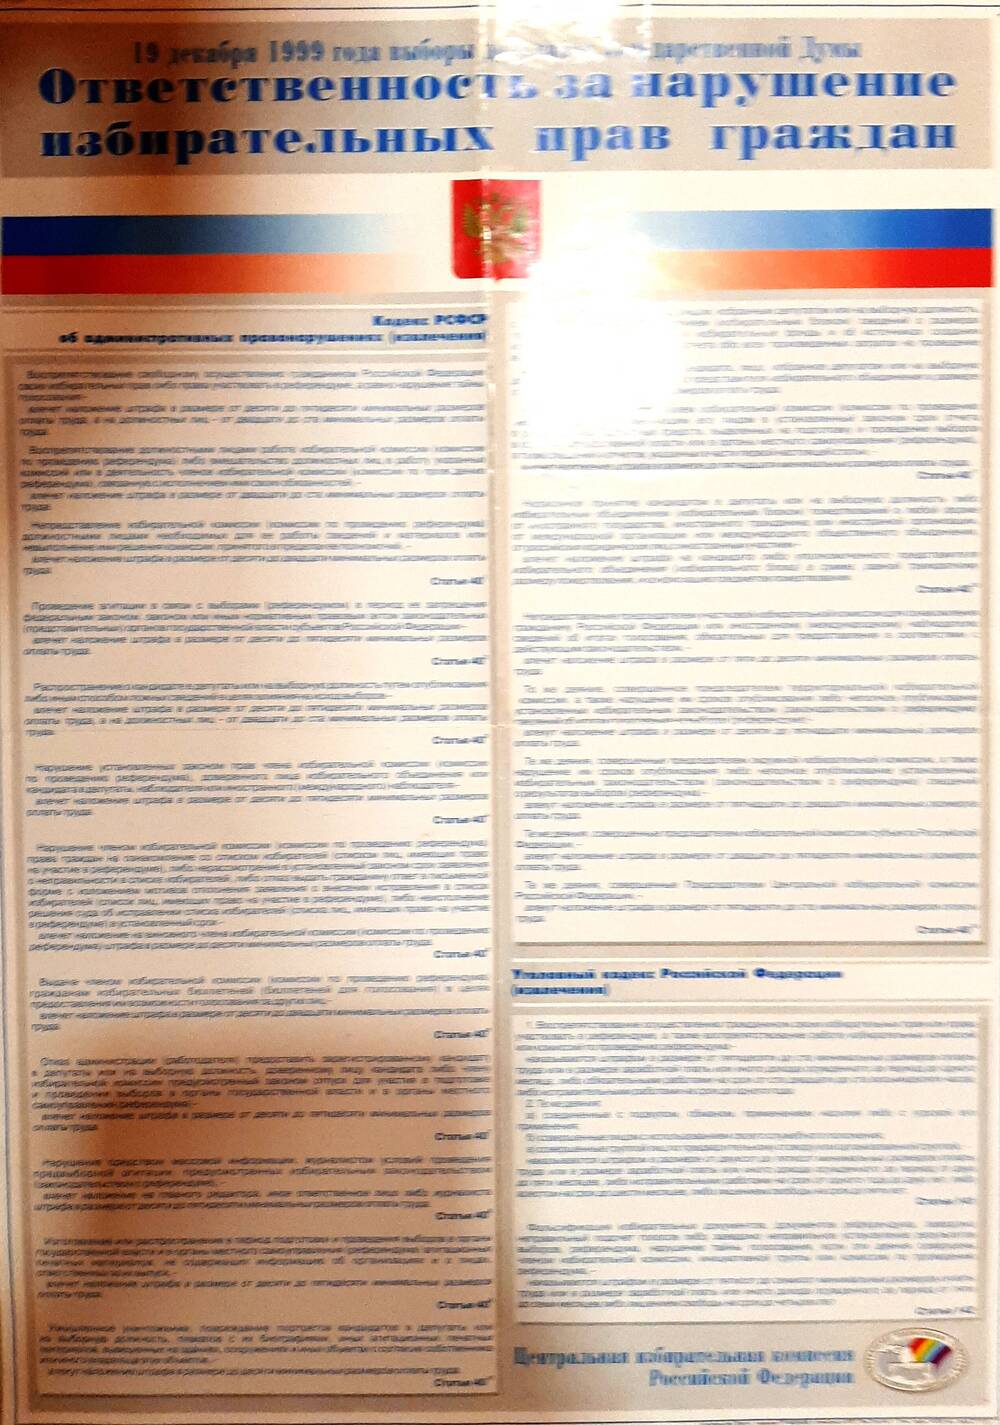 Плакат 19 декабря 1999 года - выборы депутатов Государственной Думы - ответственность за нарушение избирательных прав граждан.